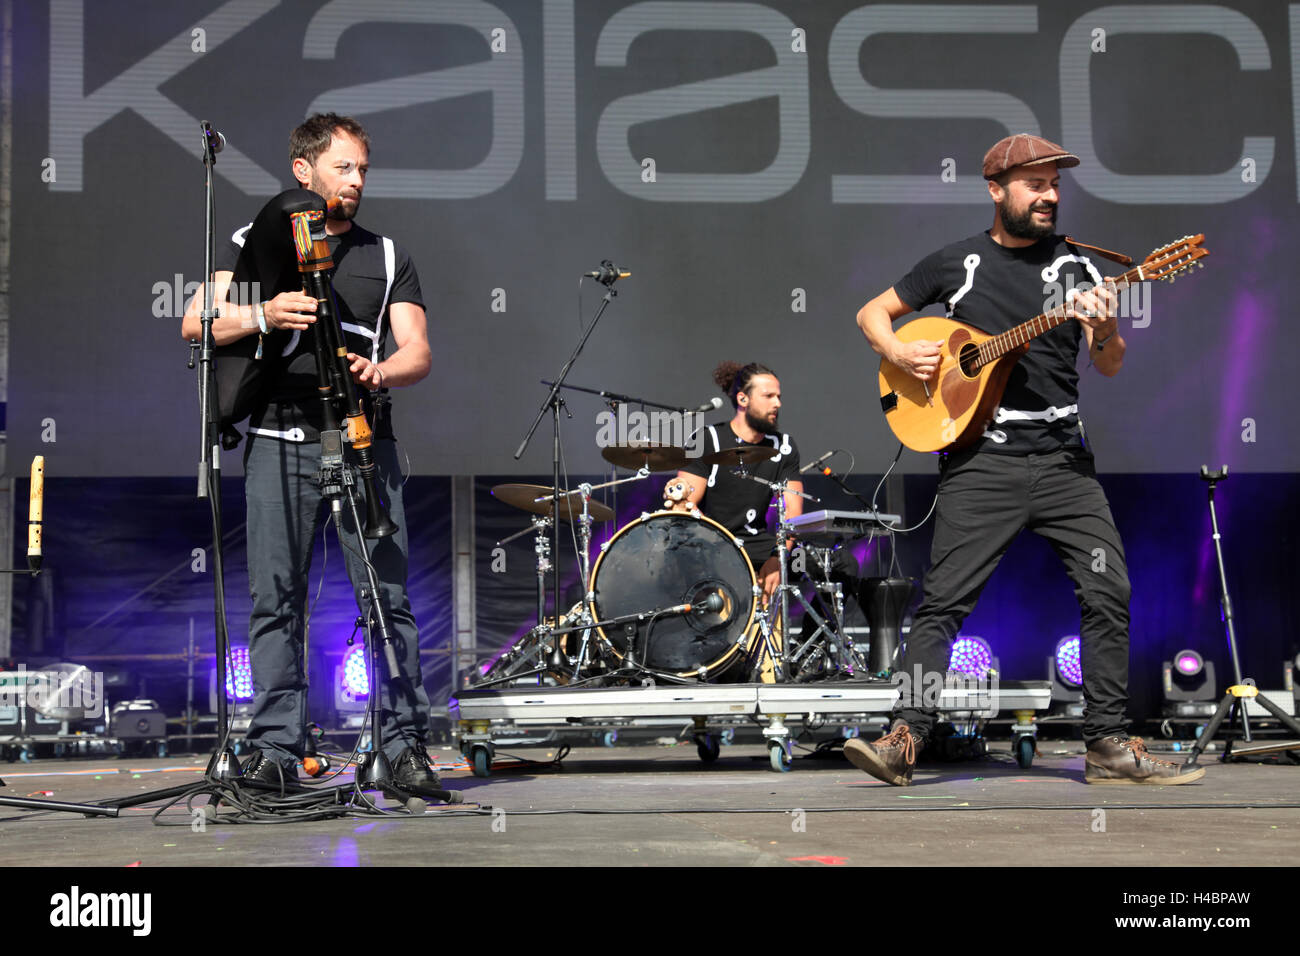 Kalascima bande italienne en prestation au festival de musique Colours of Ostrava, République tchèque, 15 juillet 2016. Banque D'Images